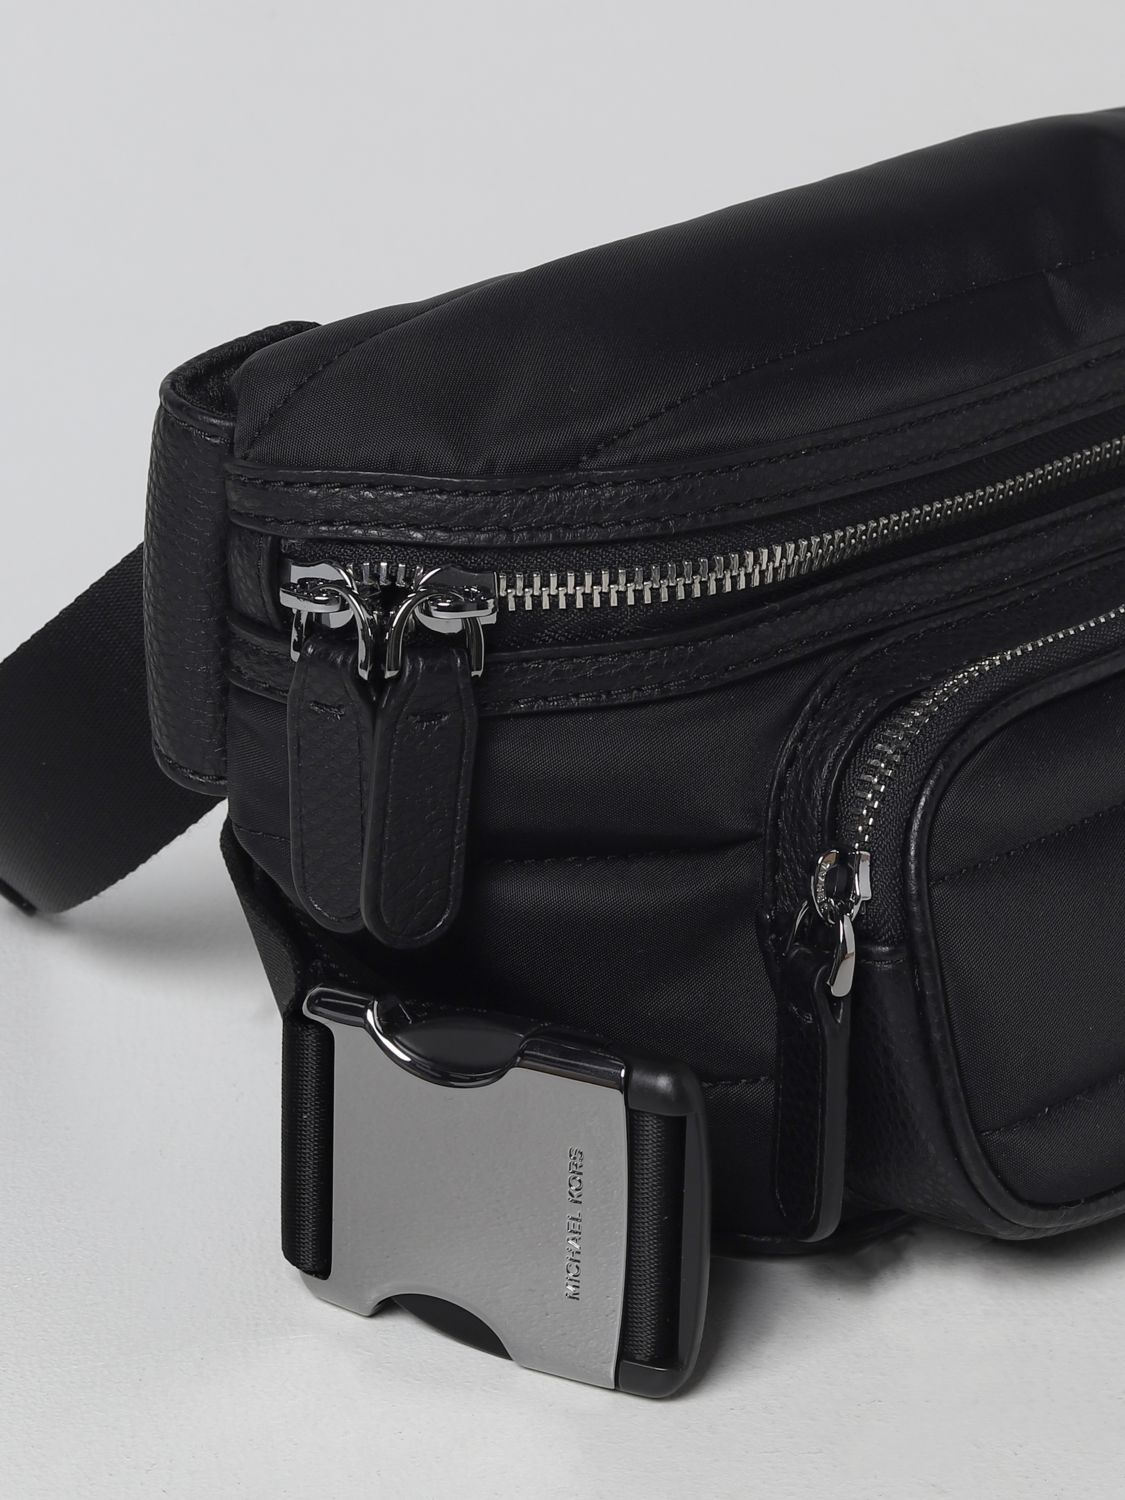 Michael Kors Outlet: belt bag for man - Black | Michael Kors belt bag  33F2LBKY9B online on 